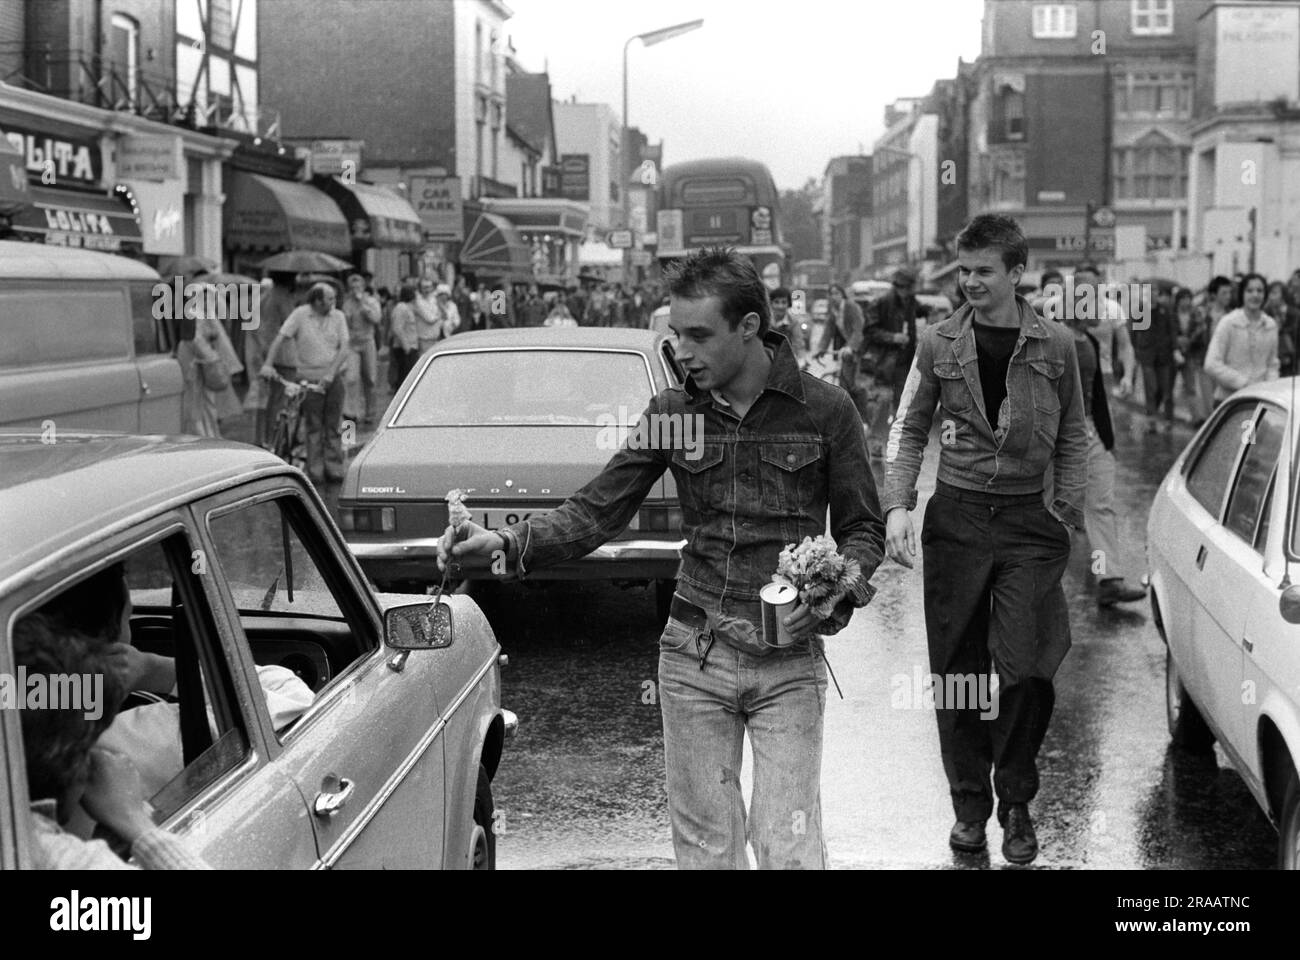 Punk, Mick vessie donne des fleurs aux conducteurs de voiture qui passent coincé dans la circulation dans Kings Road, Chelsea. Un embouteillage qu'ils ont causé en marchant au milieu de la route. Londres, Angleterre vers 1977 1970s Royaume-Uni HOMER SYKES Banque D'Images